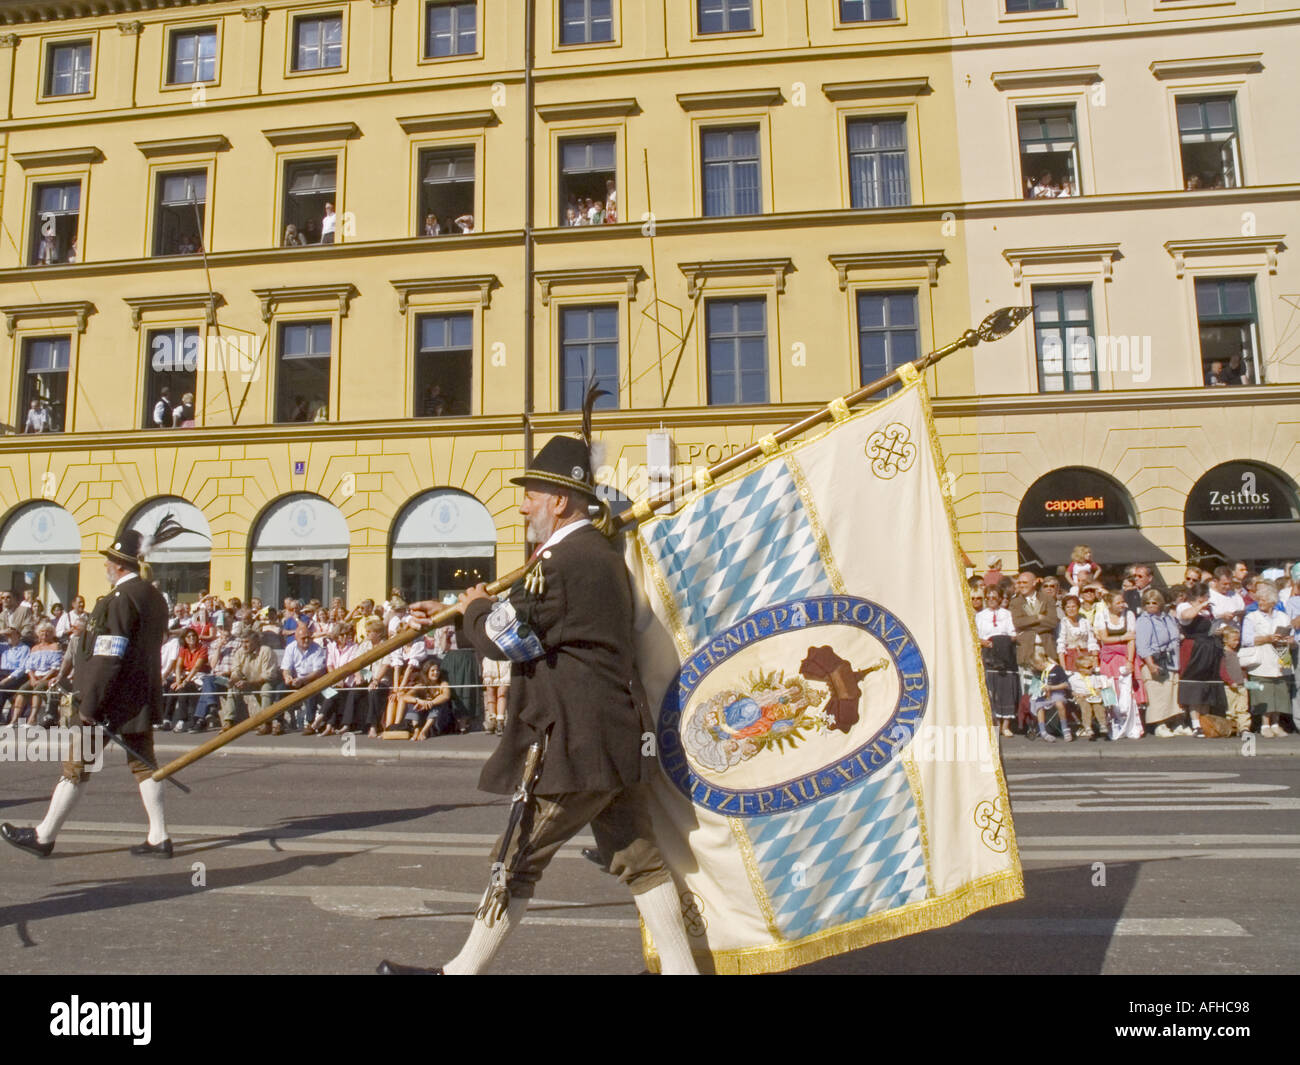 Europa Germania Monaco di Baviera - Festa della birra Oktoberfest coloratissima sfilata tradizionale si tengono ogni anno a Monaco di Baviera. Foto Stock